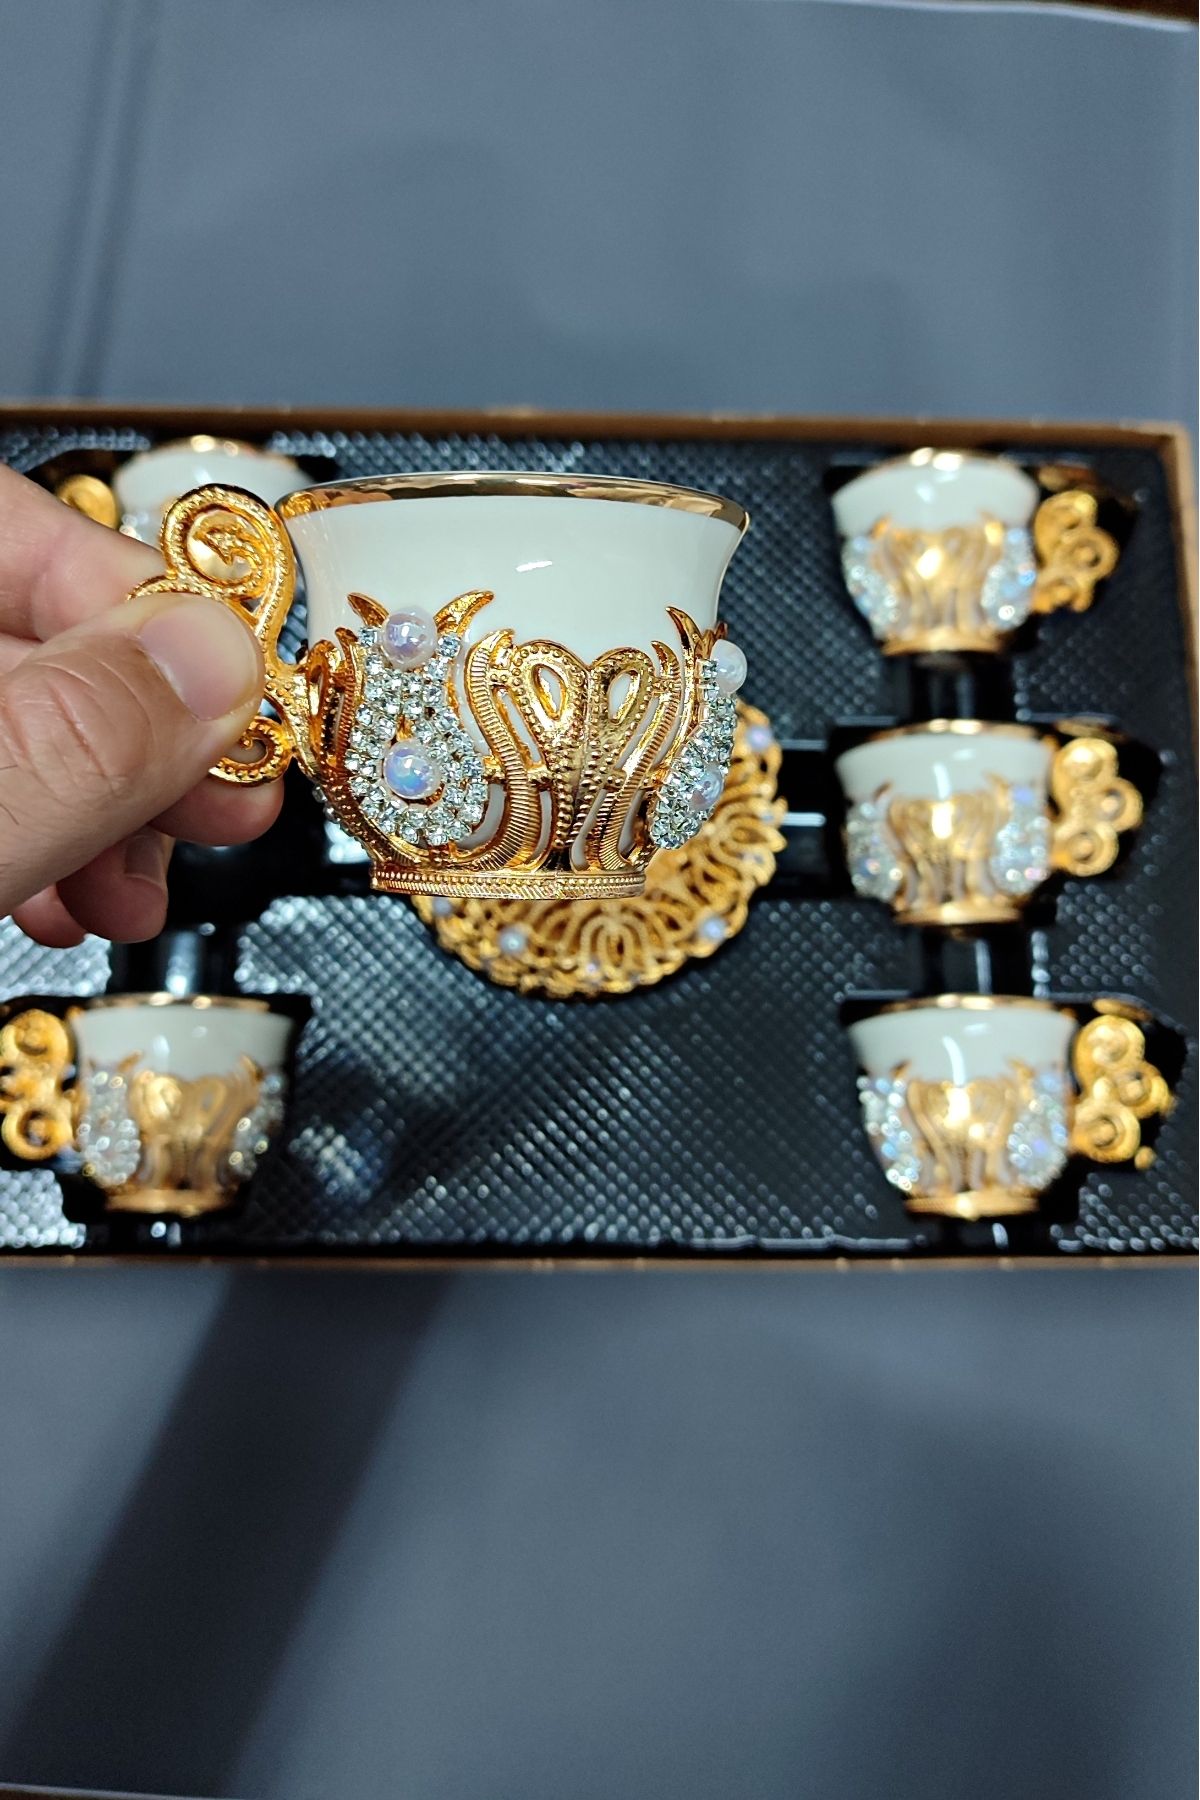 bigiyin El Yapımı Swarovski Kristal Taşlı Kahve Bardağı Seti Kahve Fincanı 6 Kişilik 12 Parça